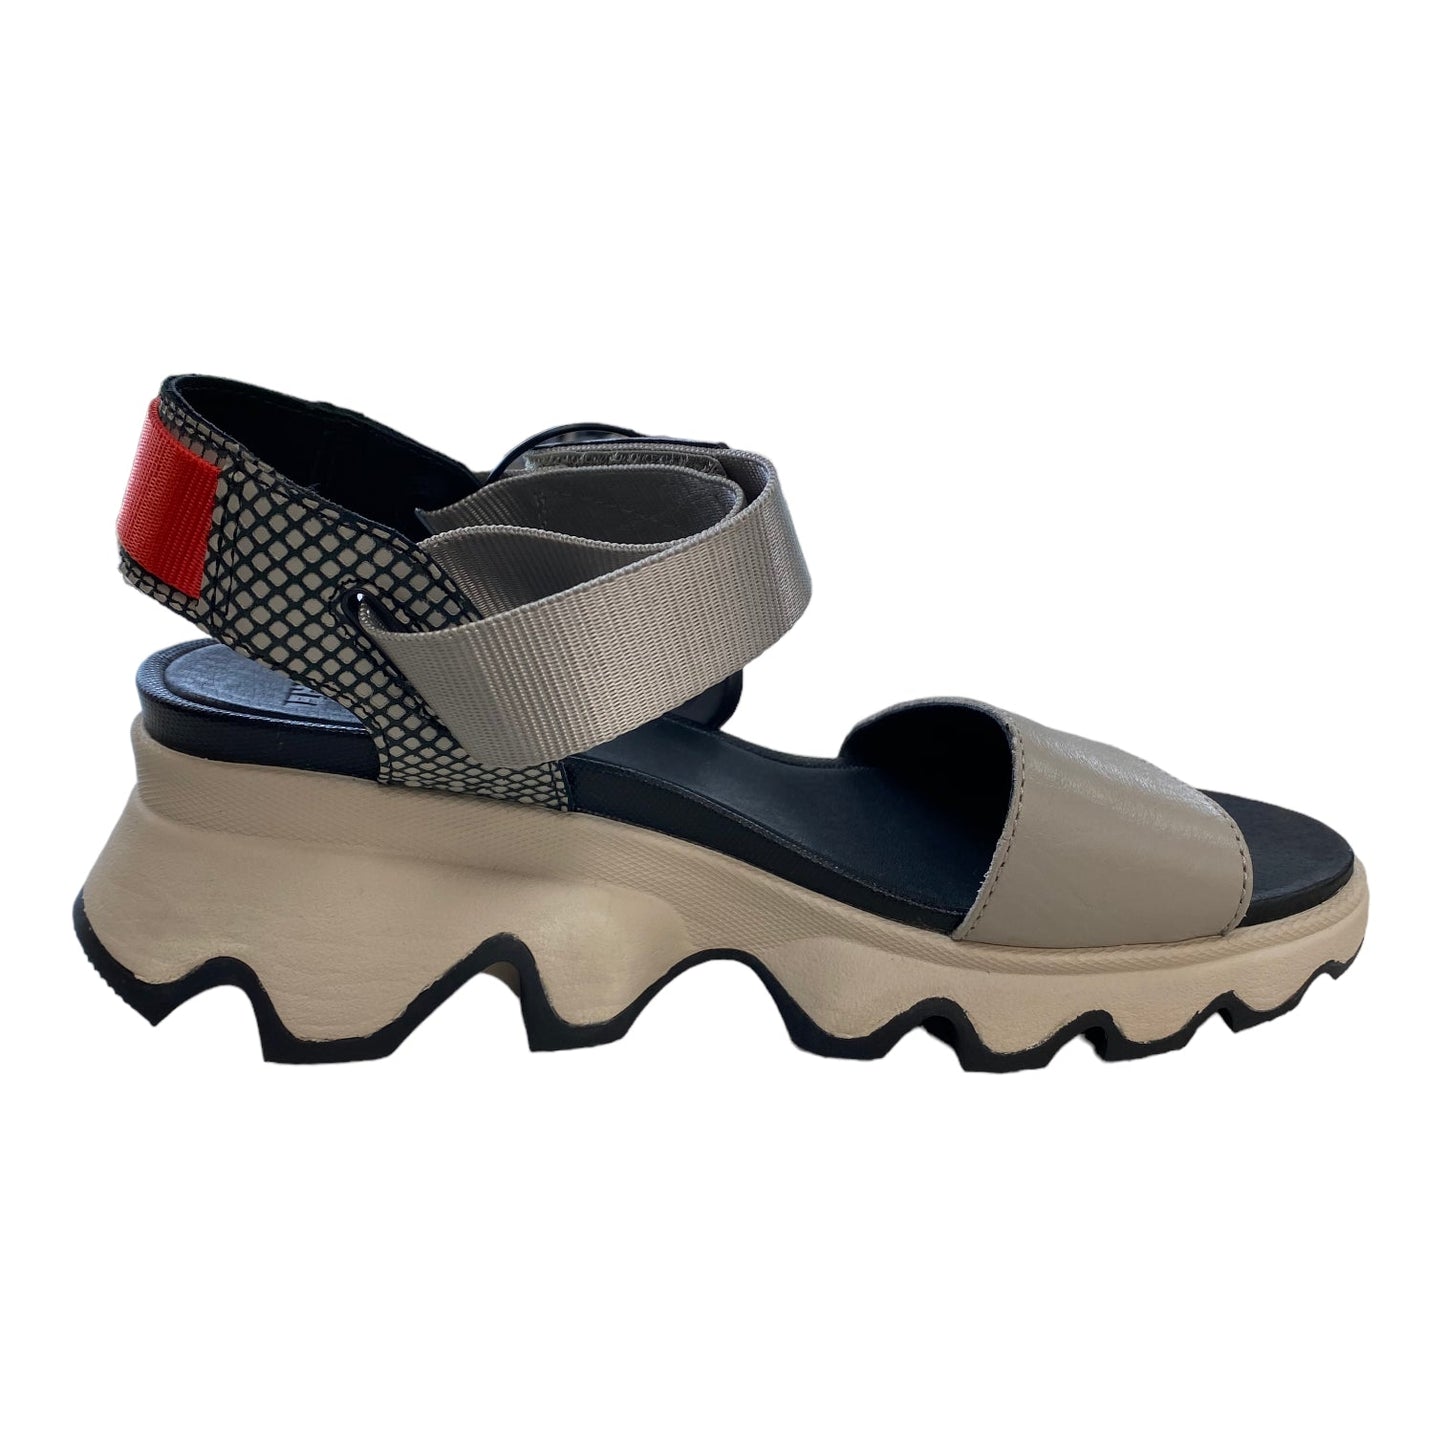 Grey Sandals Flats Sorel, Size 7